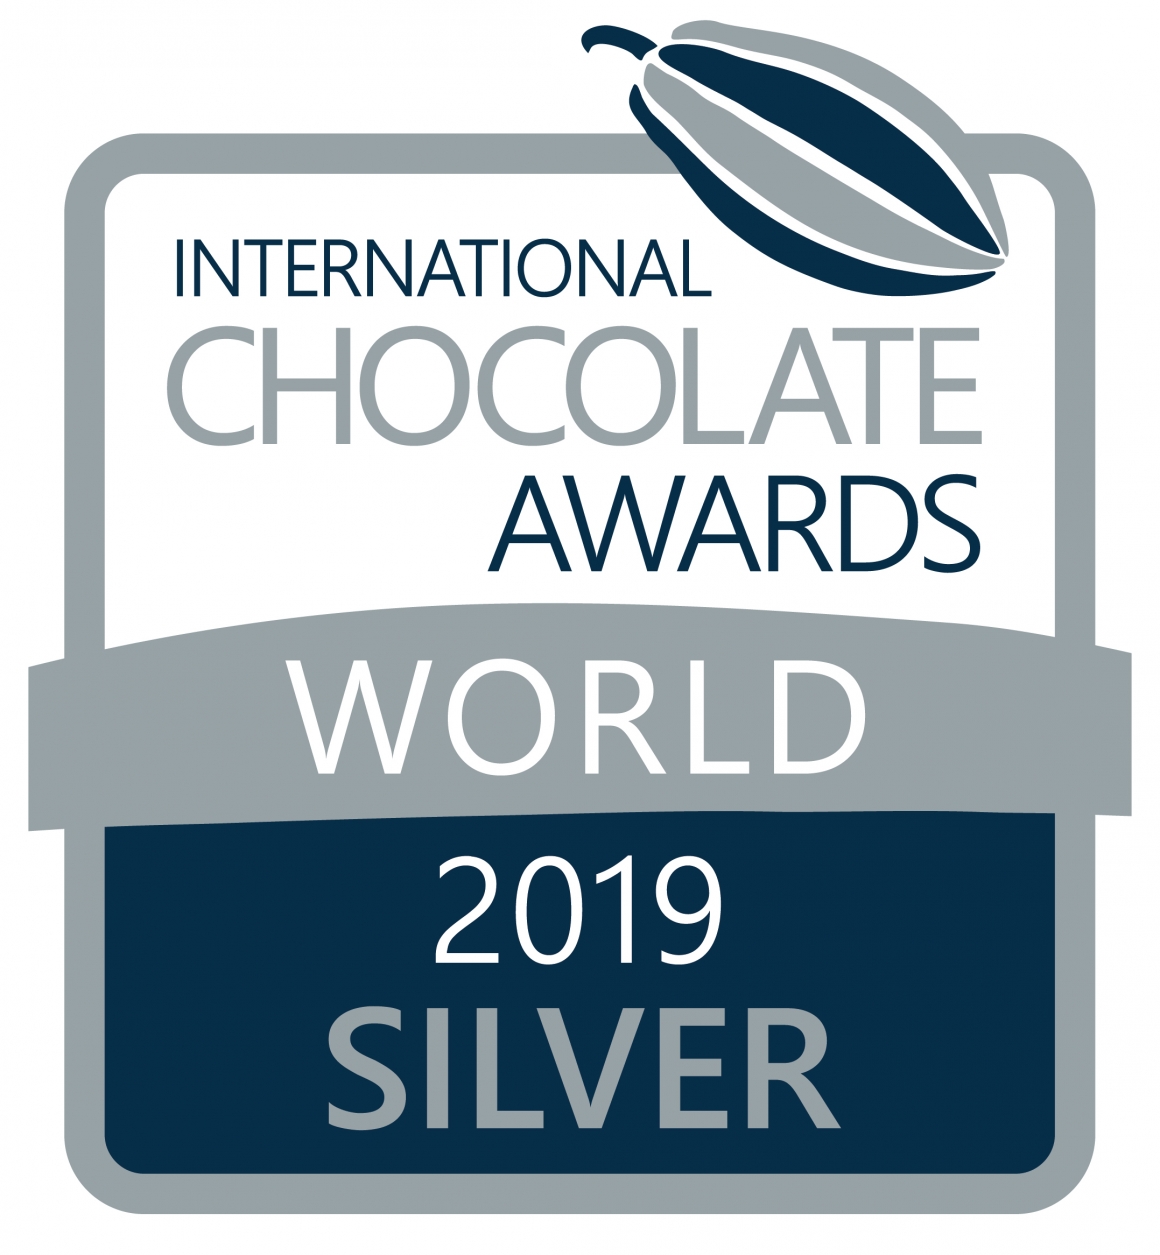 荔枝紅玉茶巧克力Bar更獲得了全世界銀牌獎的榮耀